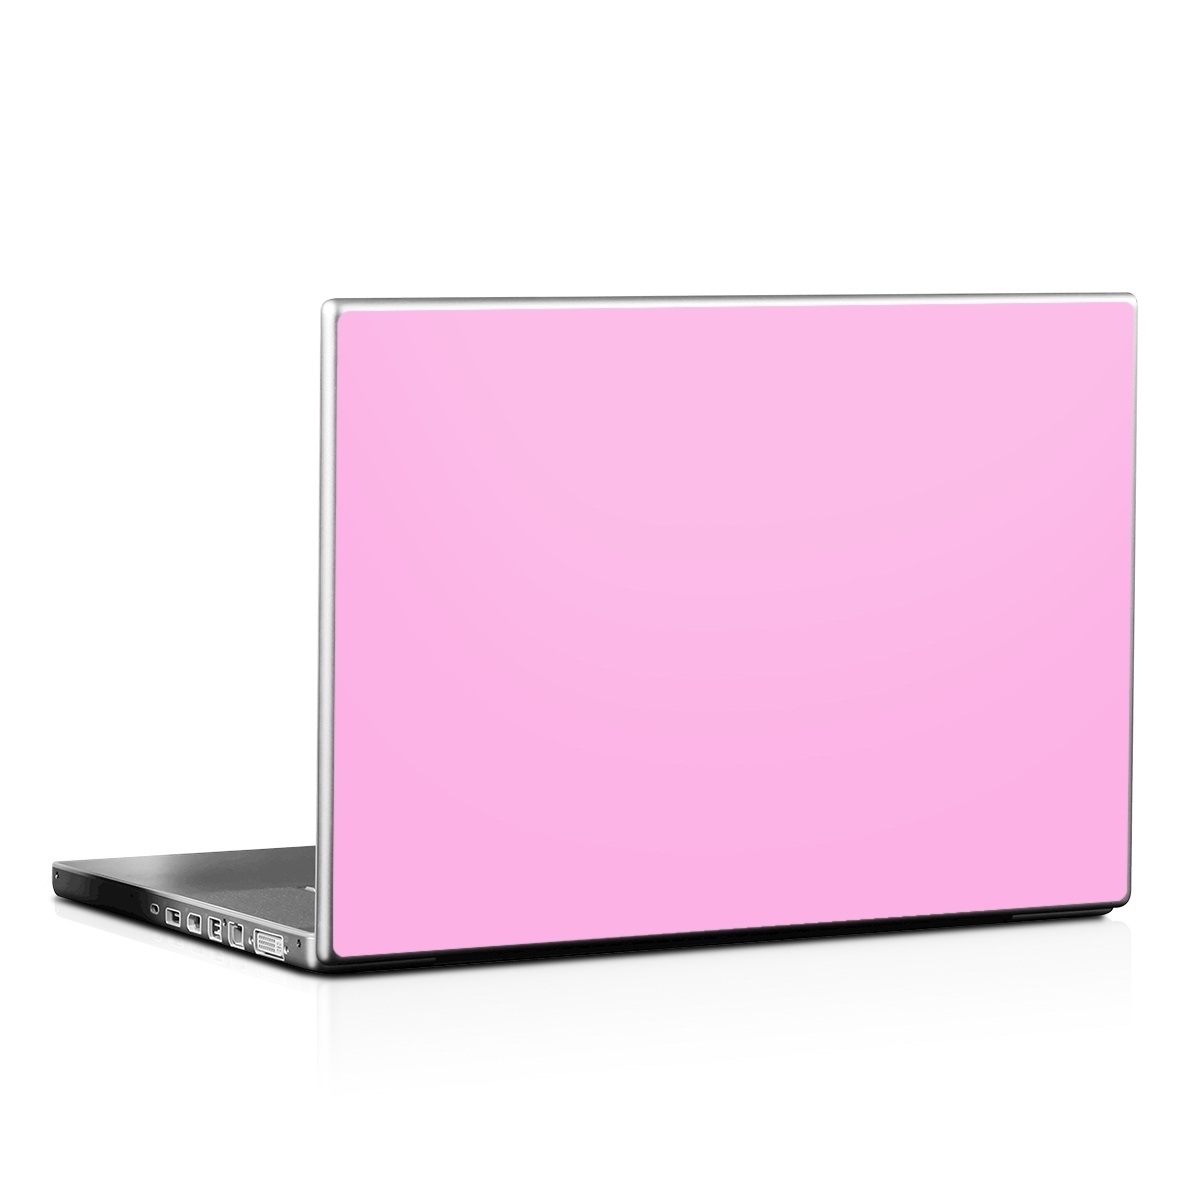 Laptop Skin - Solid State Pink (Image 1)